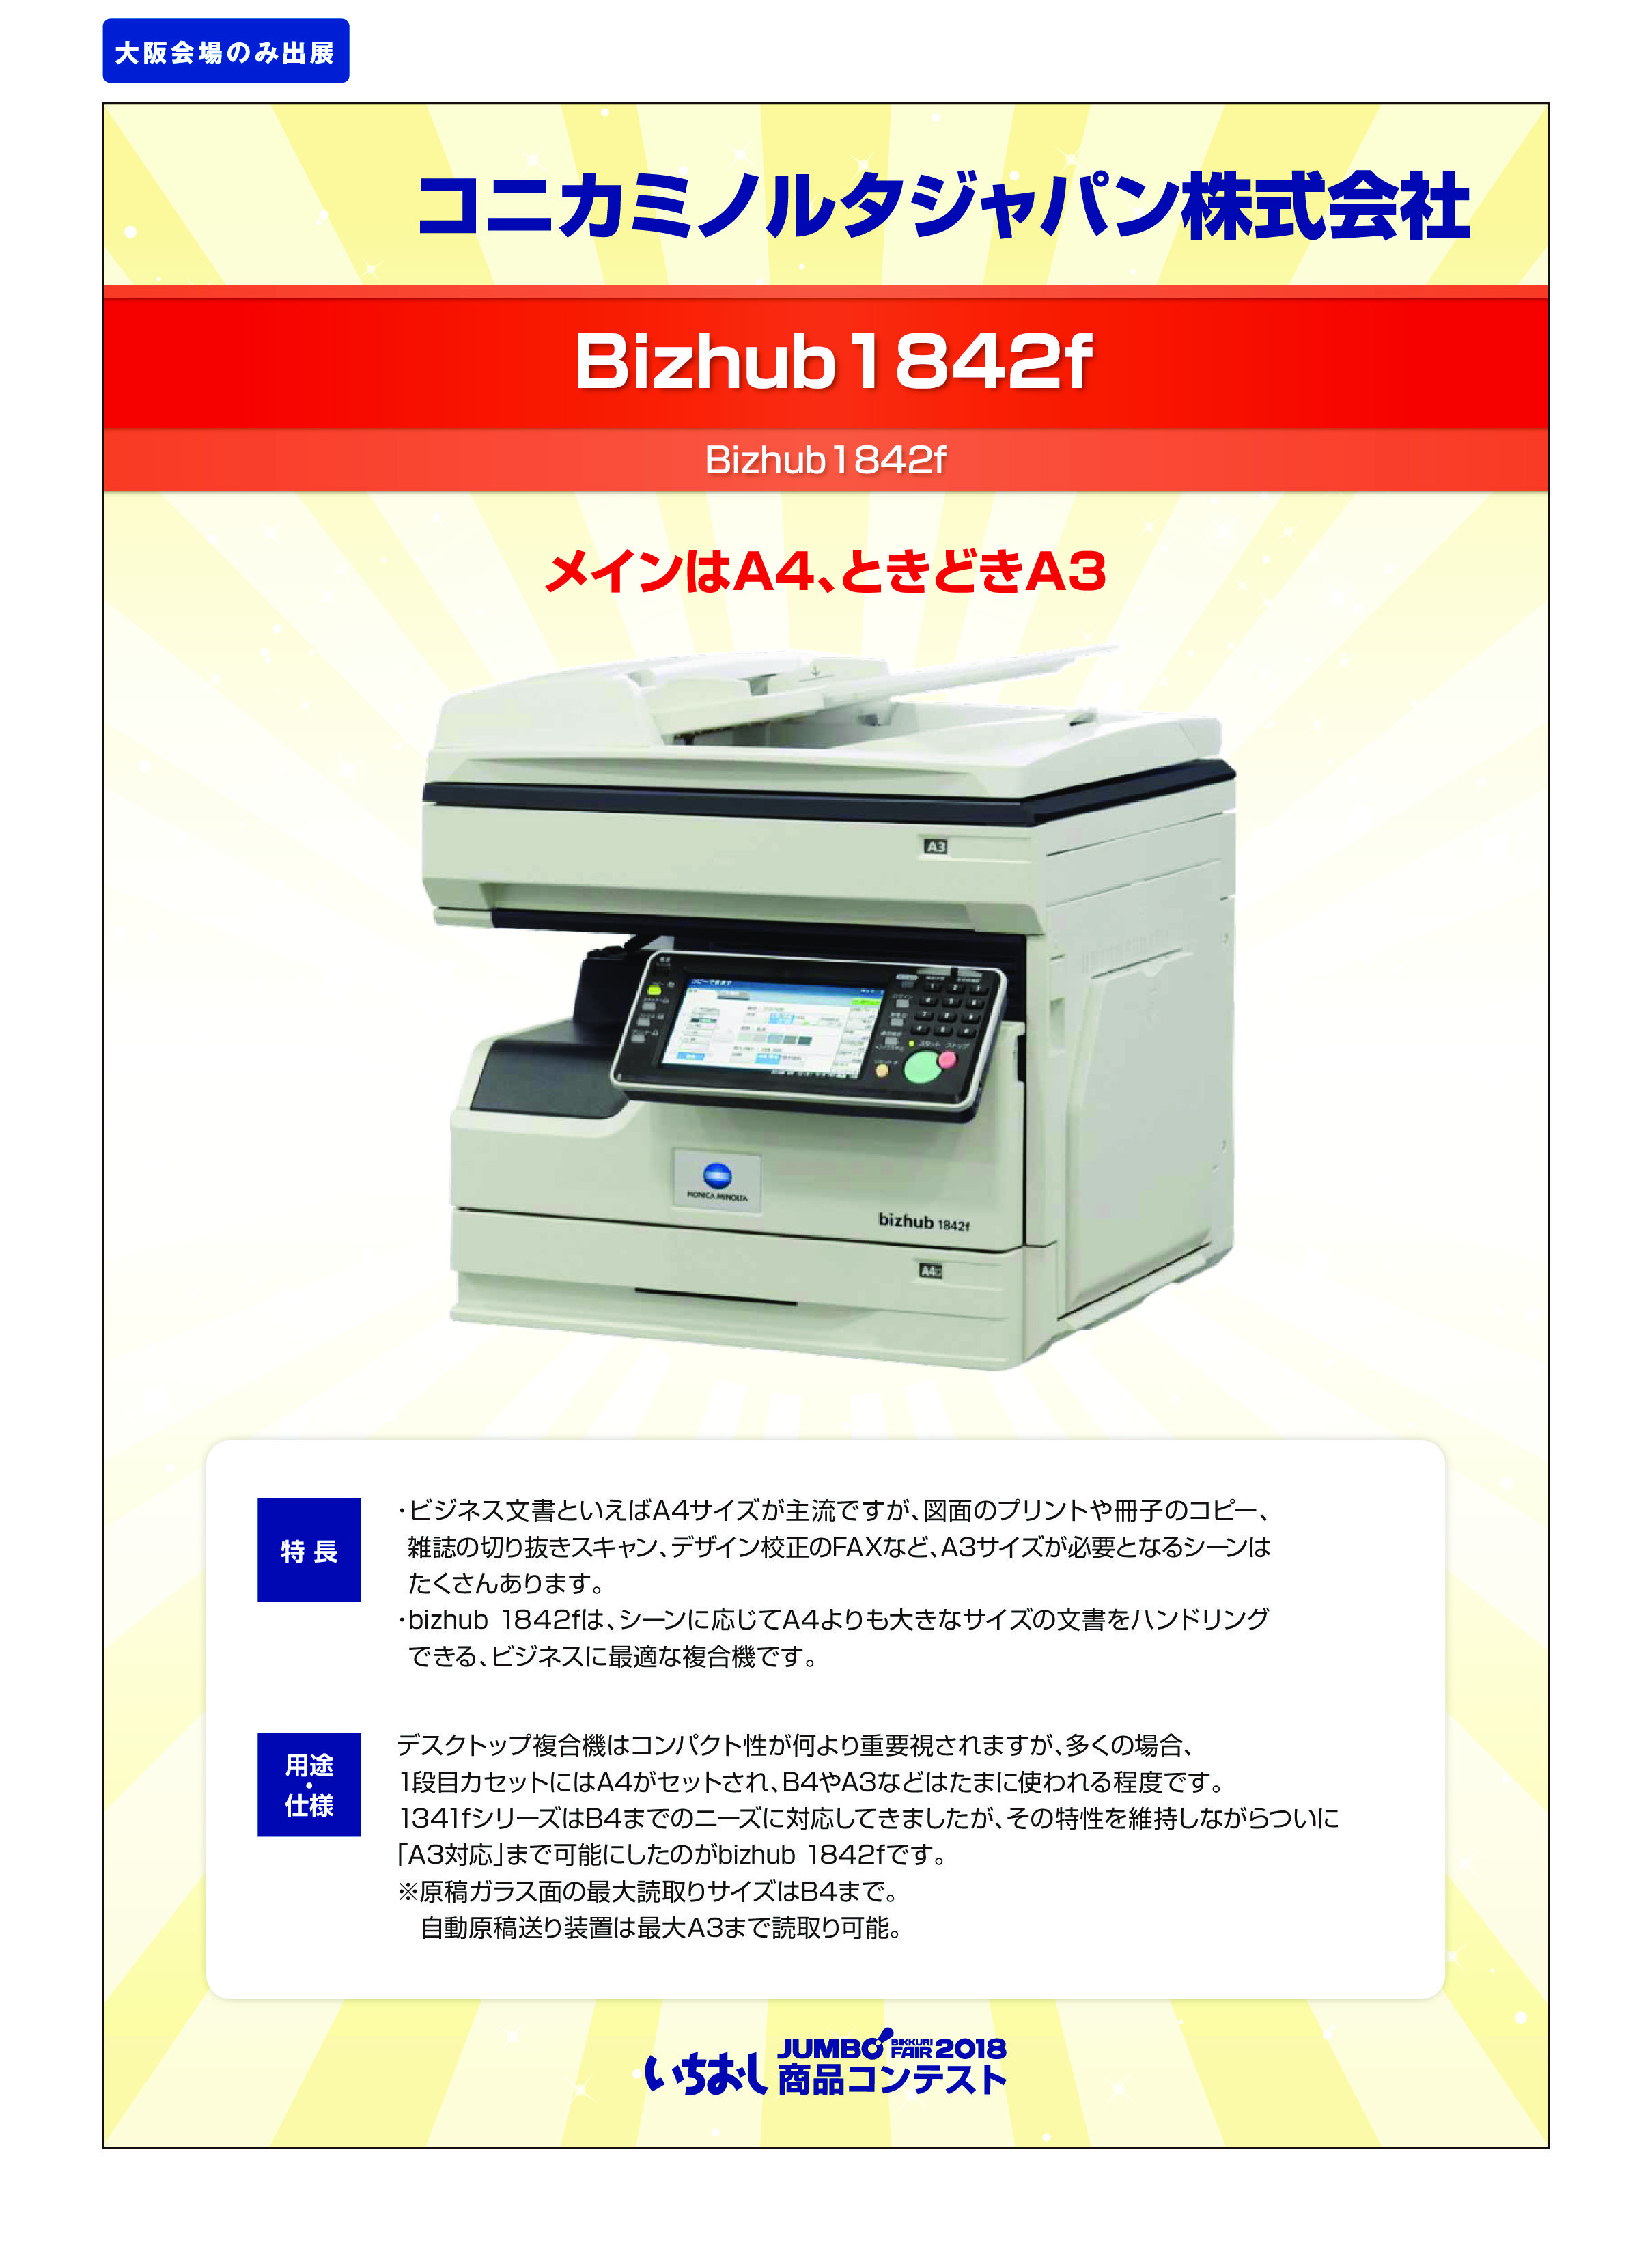 「Bizhub1842f」コニカミノルタジャパン株式会社の画像